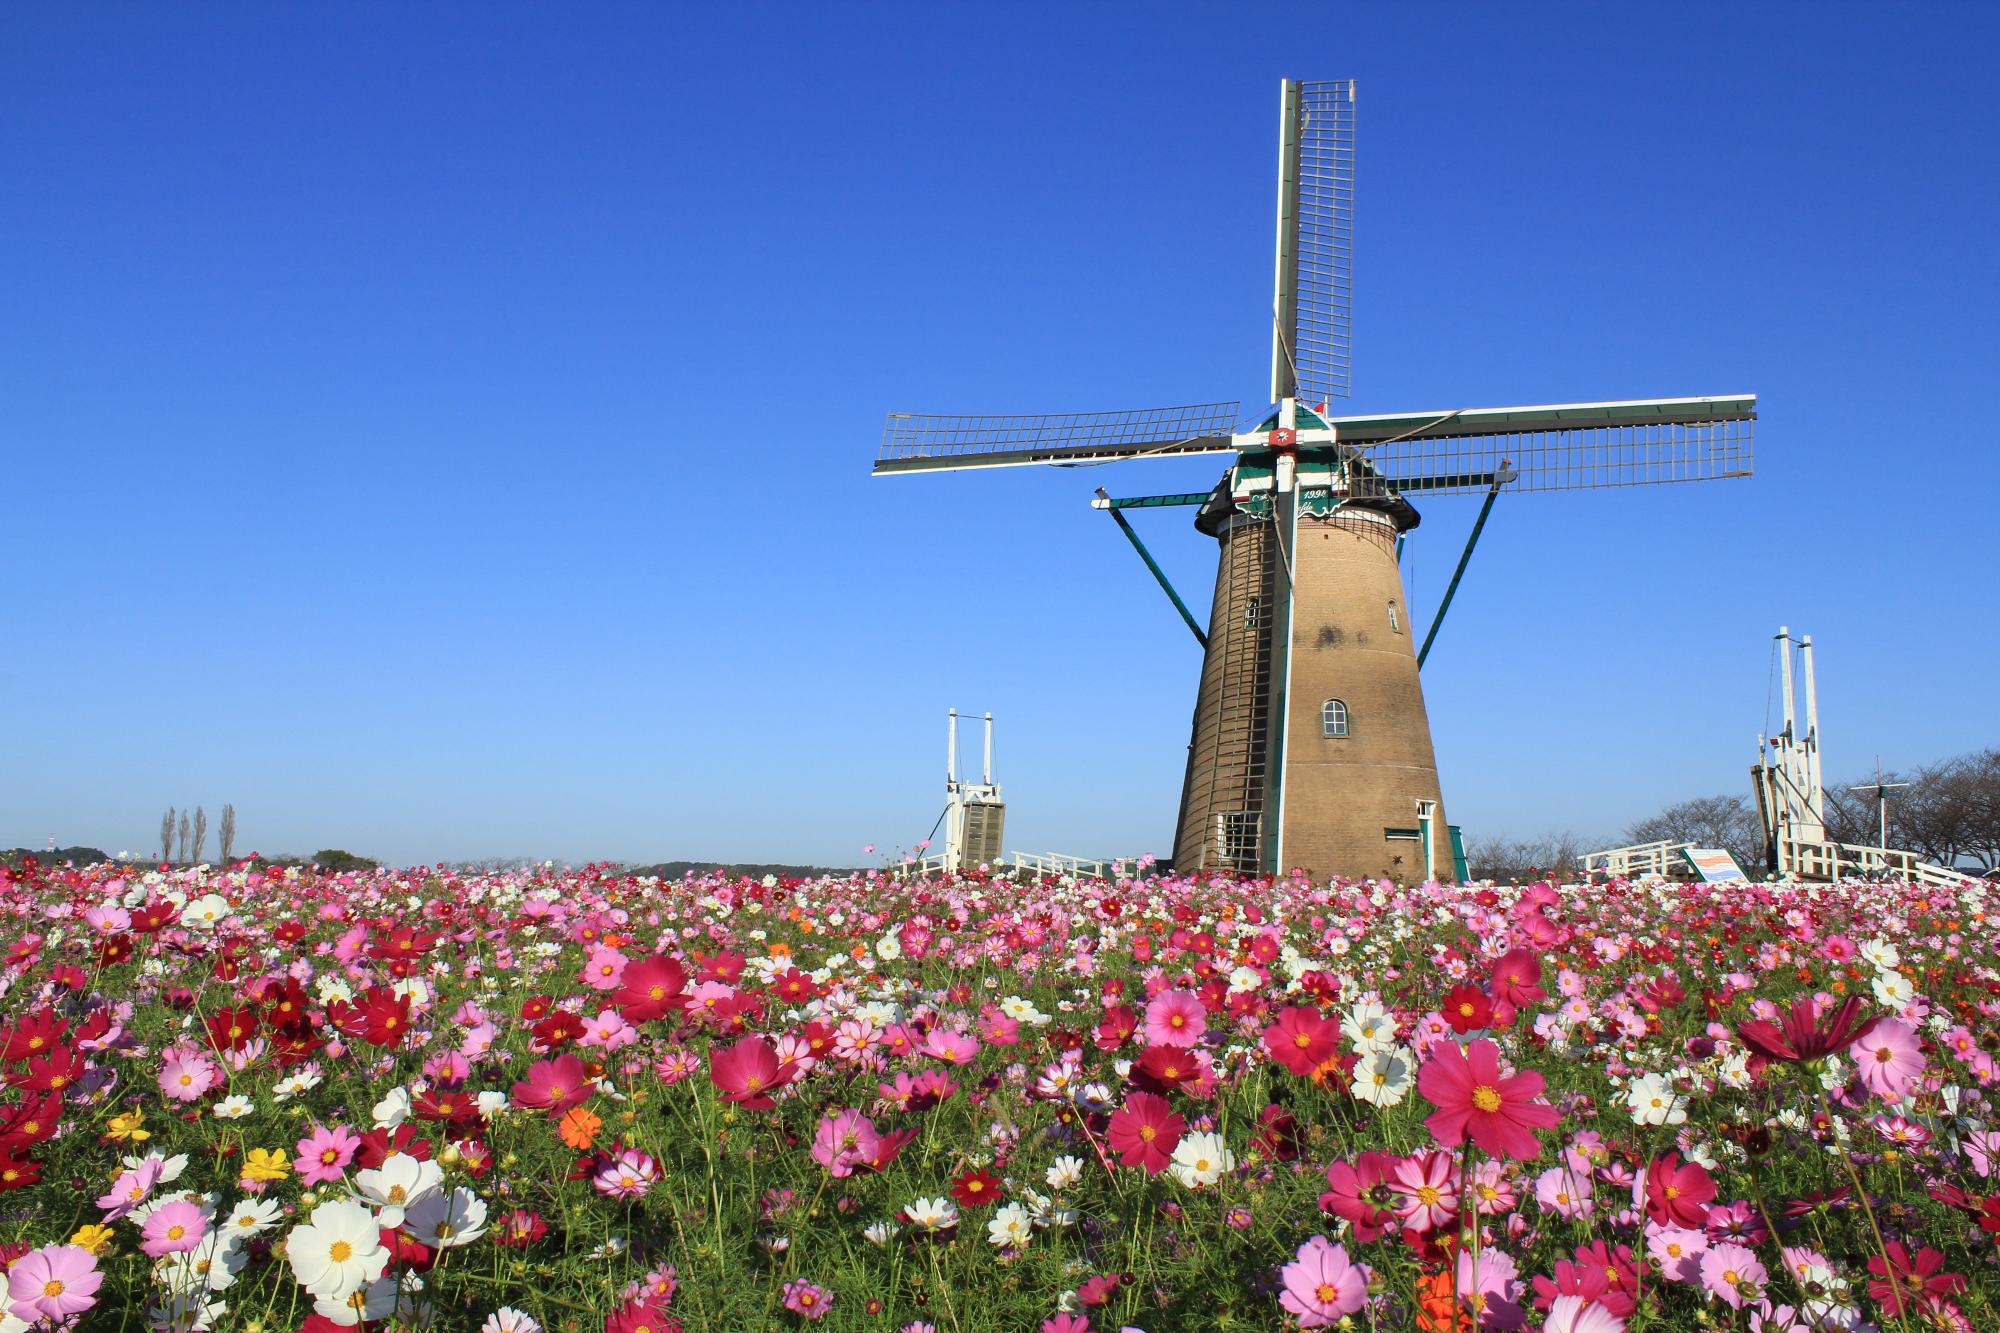 濃いピンクや薄いピンク・白色のコスモスが沢山咲き並んでいる奥に大きな風車か建っている写真